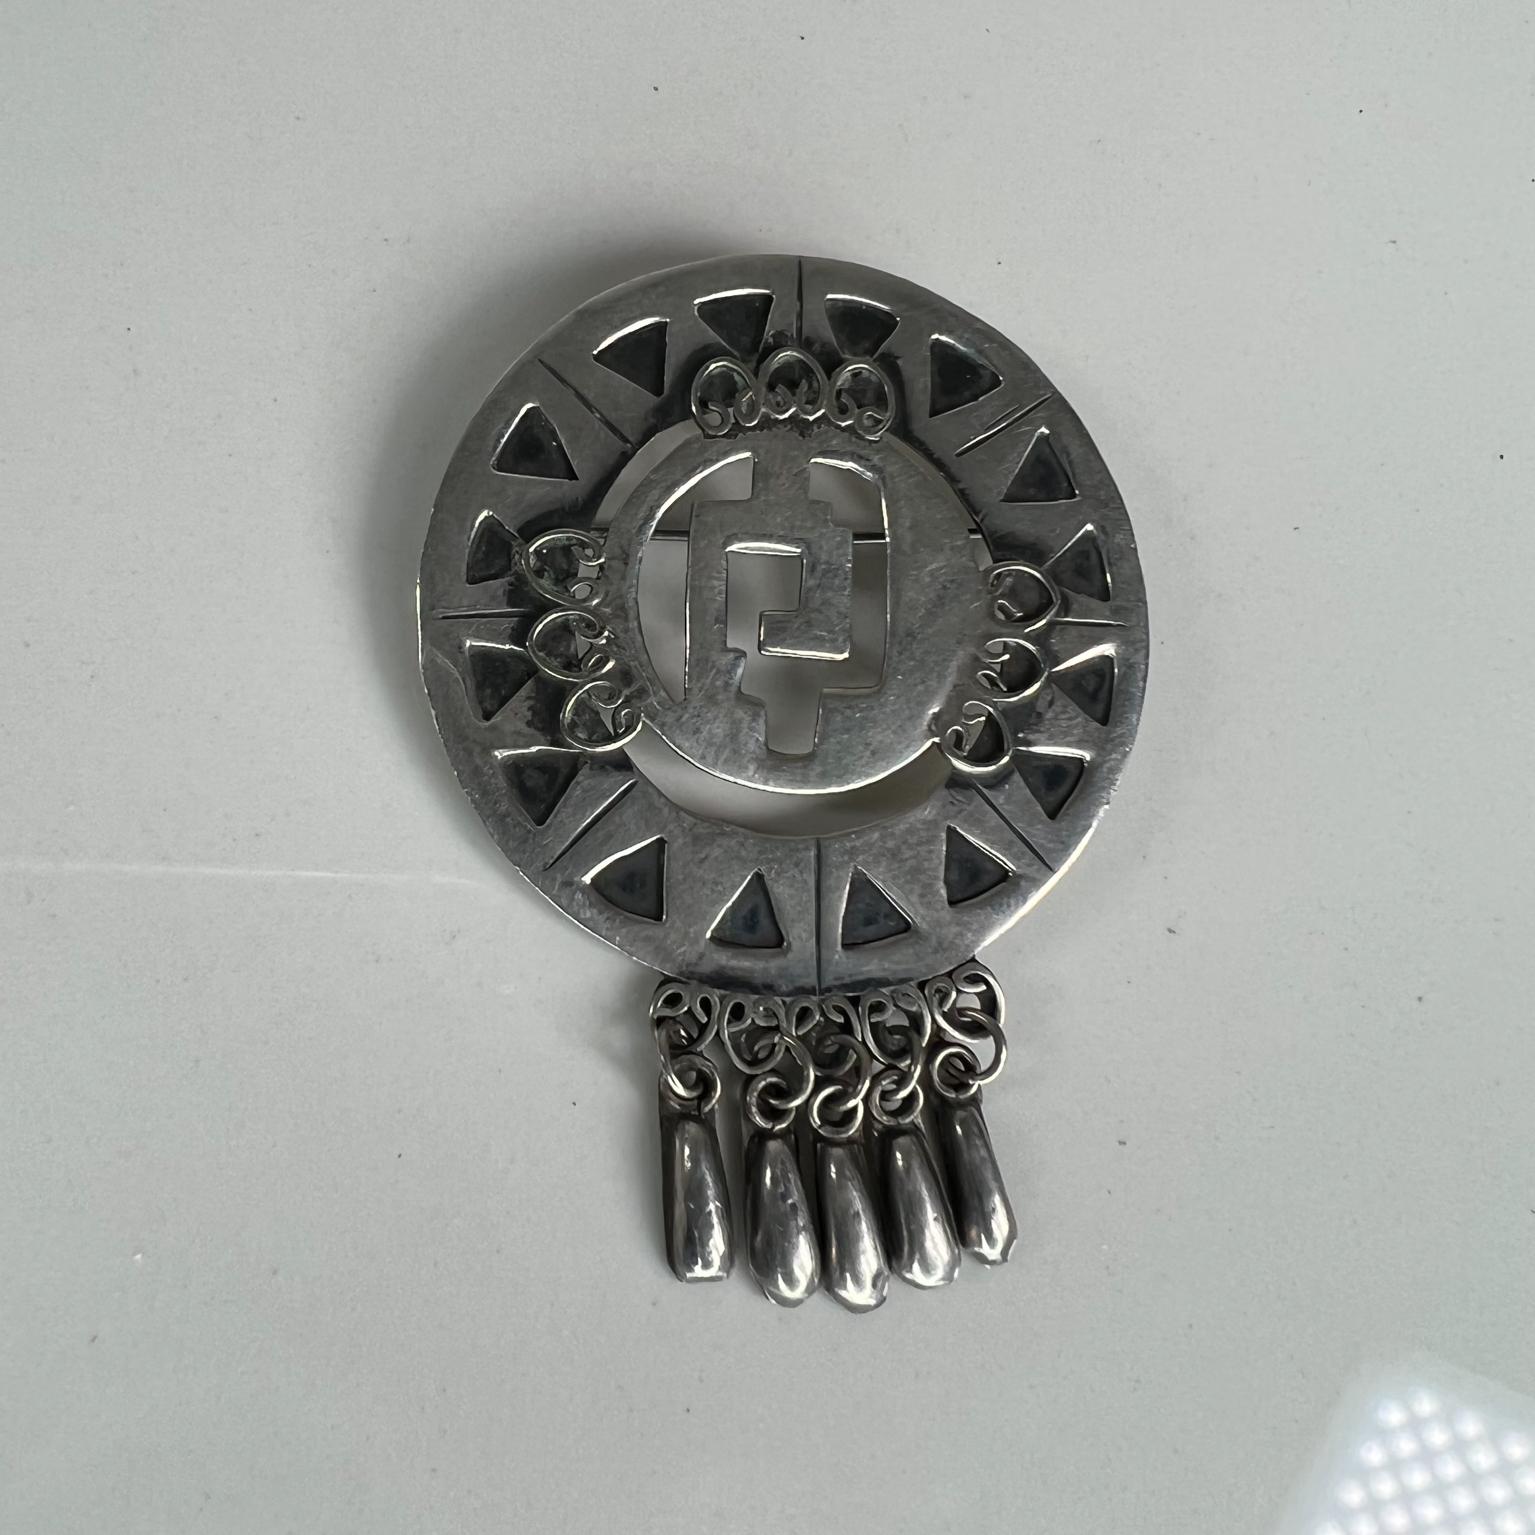 1950s Vintage Native Sterling Silber Brosche Anhänger Aztec Pin Made in Mexico
Herstellergestempelt aus Mexiko
2 B x 2,5 hoch x 0,13 dick
Gebraucht Original Vintage Zustand
Siehe mitgelieferte Bilder.




